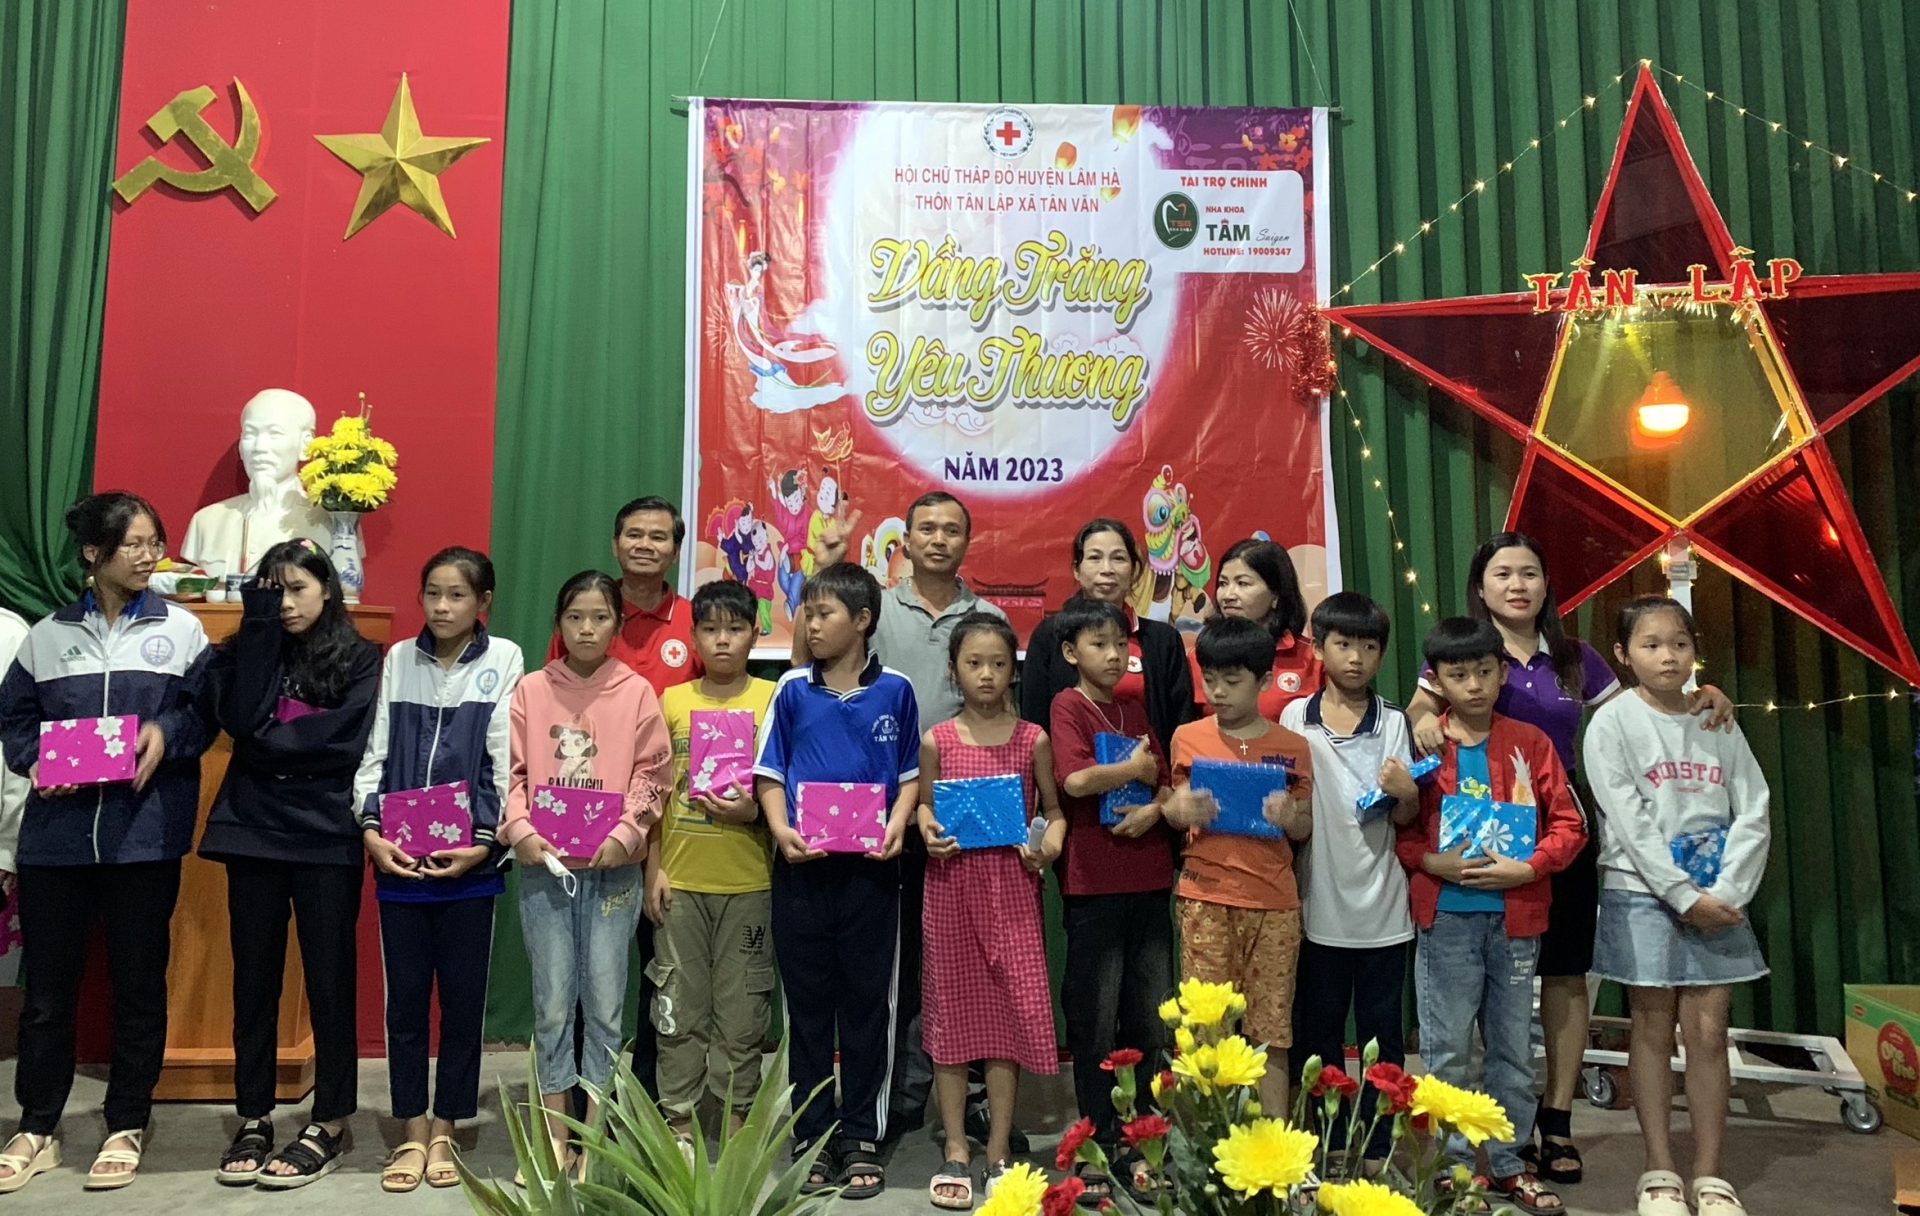 Nhà tài trợ chính Nha khoa Tâm Sài Gòn trao tặng quà Trung thu cho trẻ em 